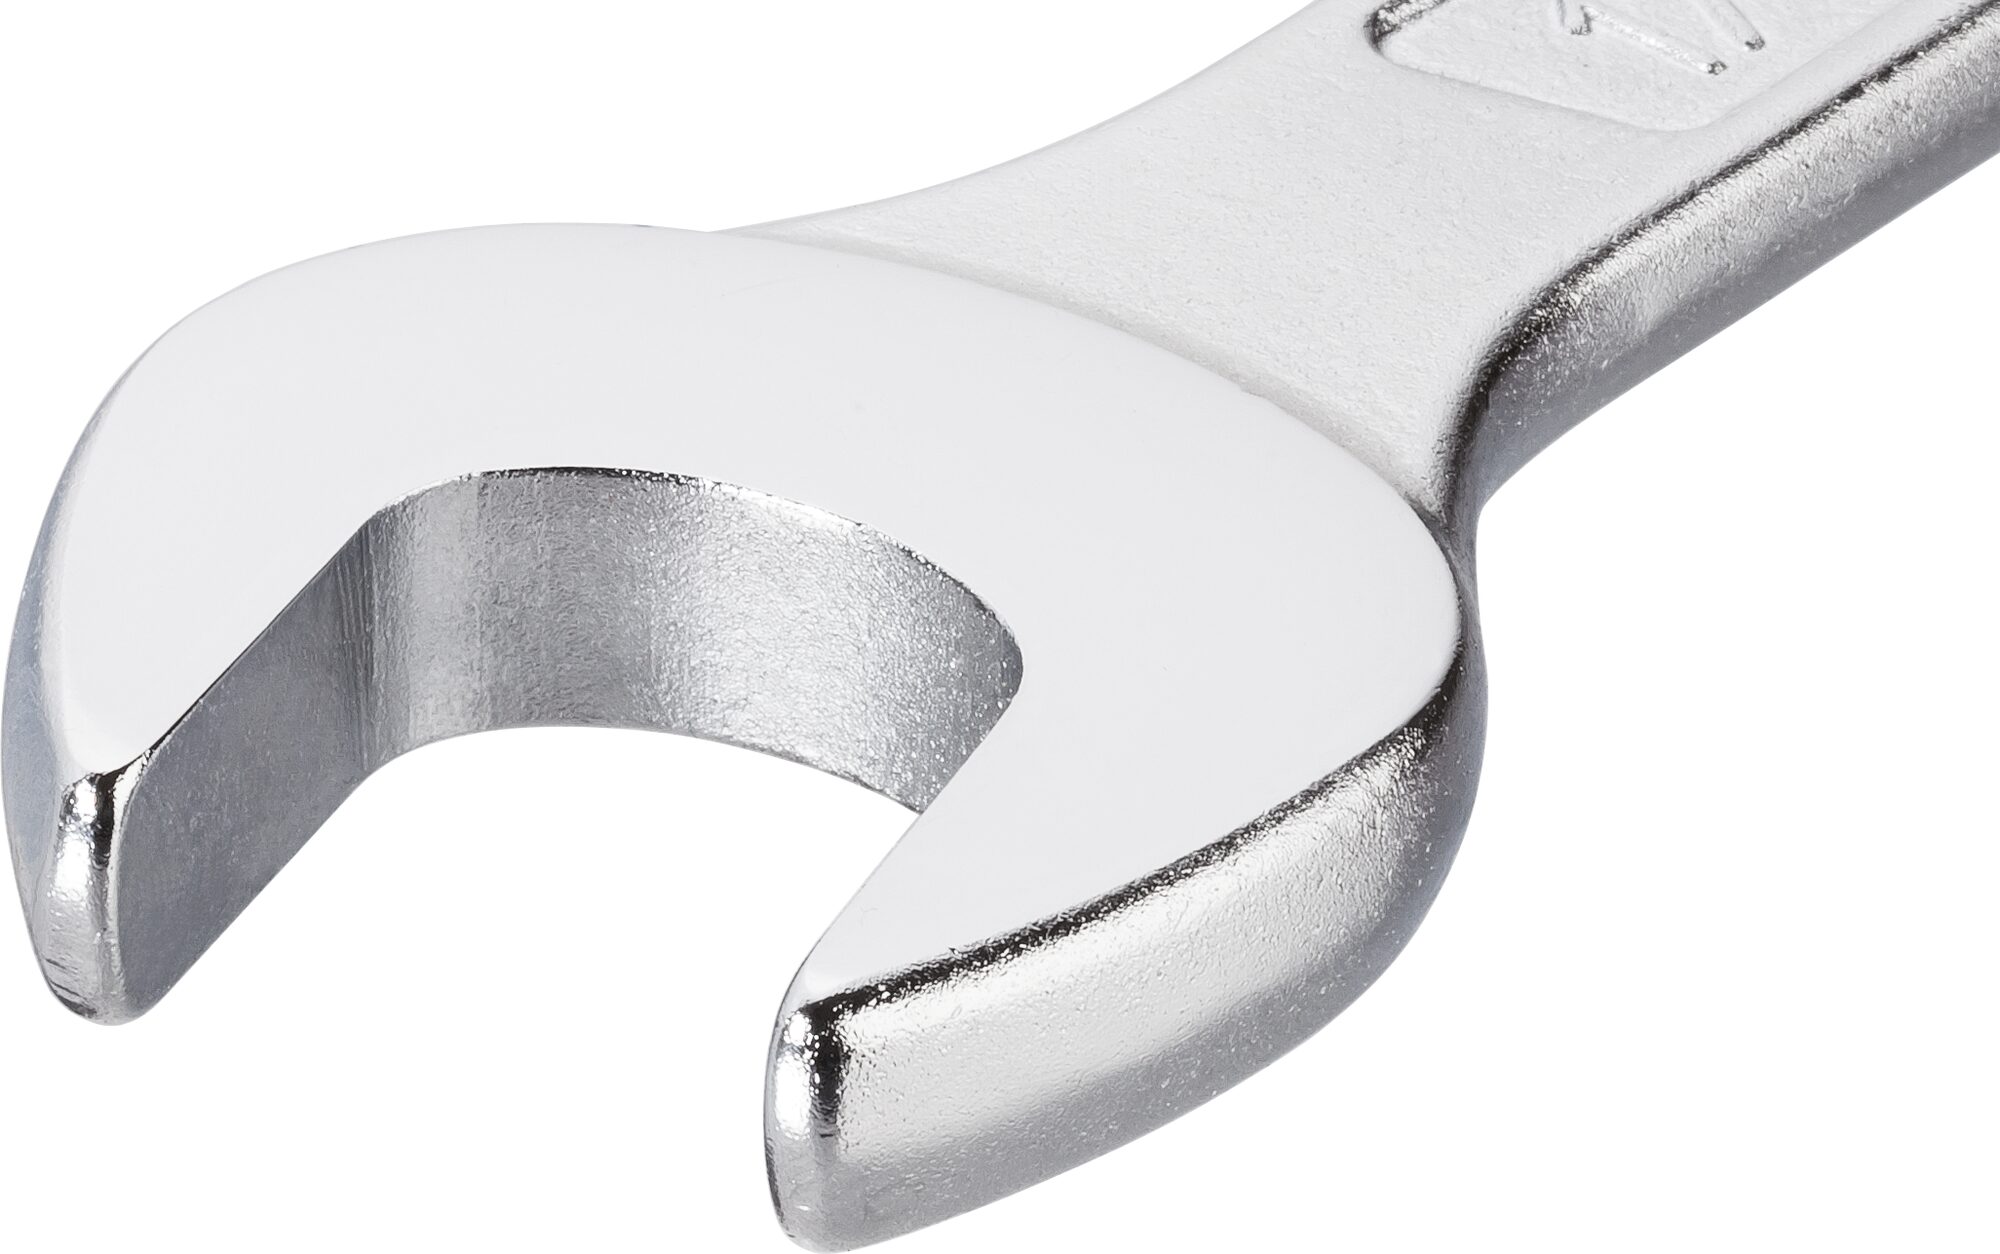 HAZET Ring-Maulschlüssel 600N-8 · Außen Doppel-Sechskant-Tractionsprofil · 8 mm